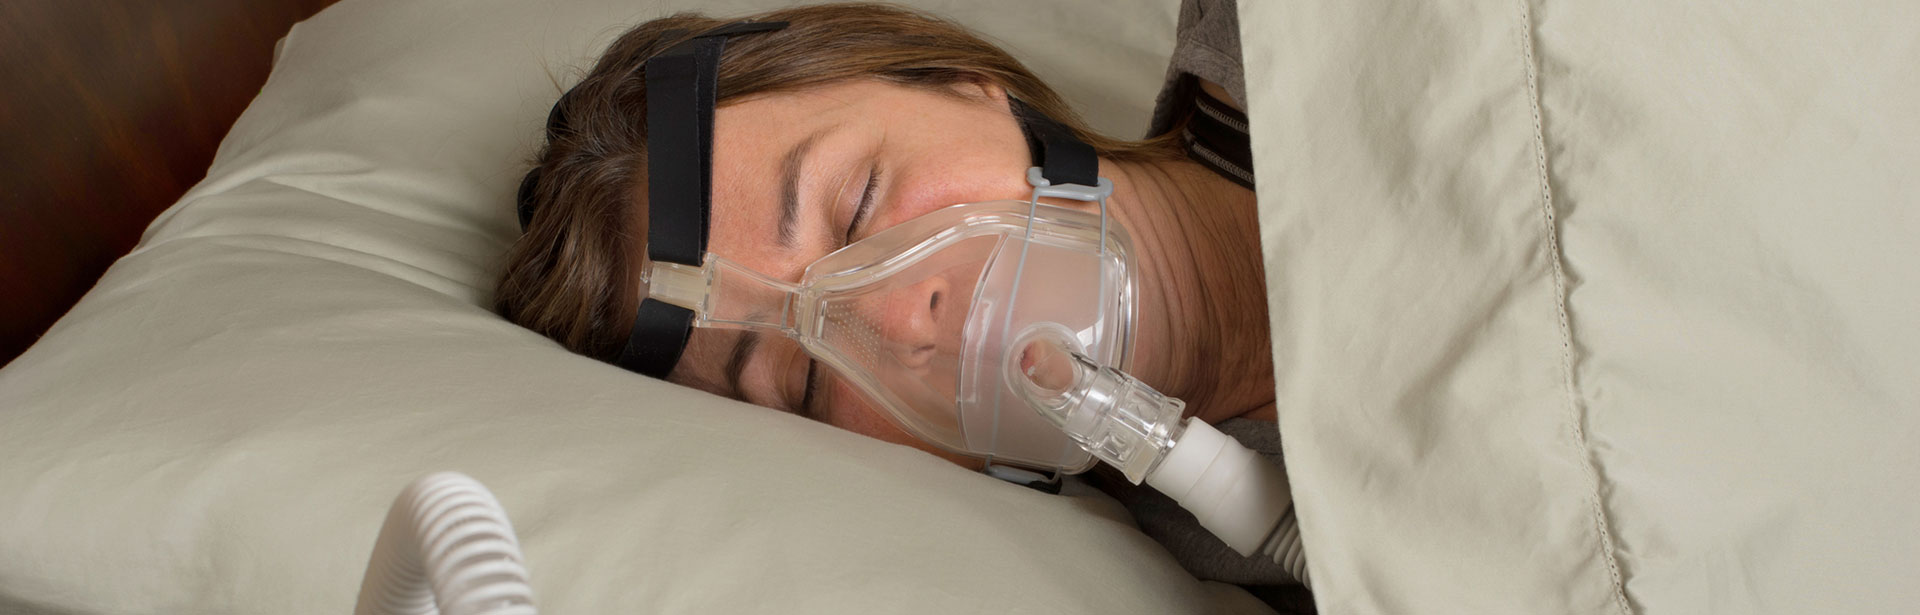 Woman sleeping after Sleep Apnea treatments